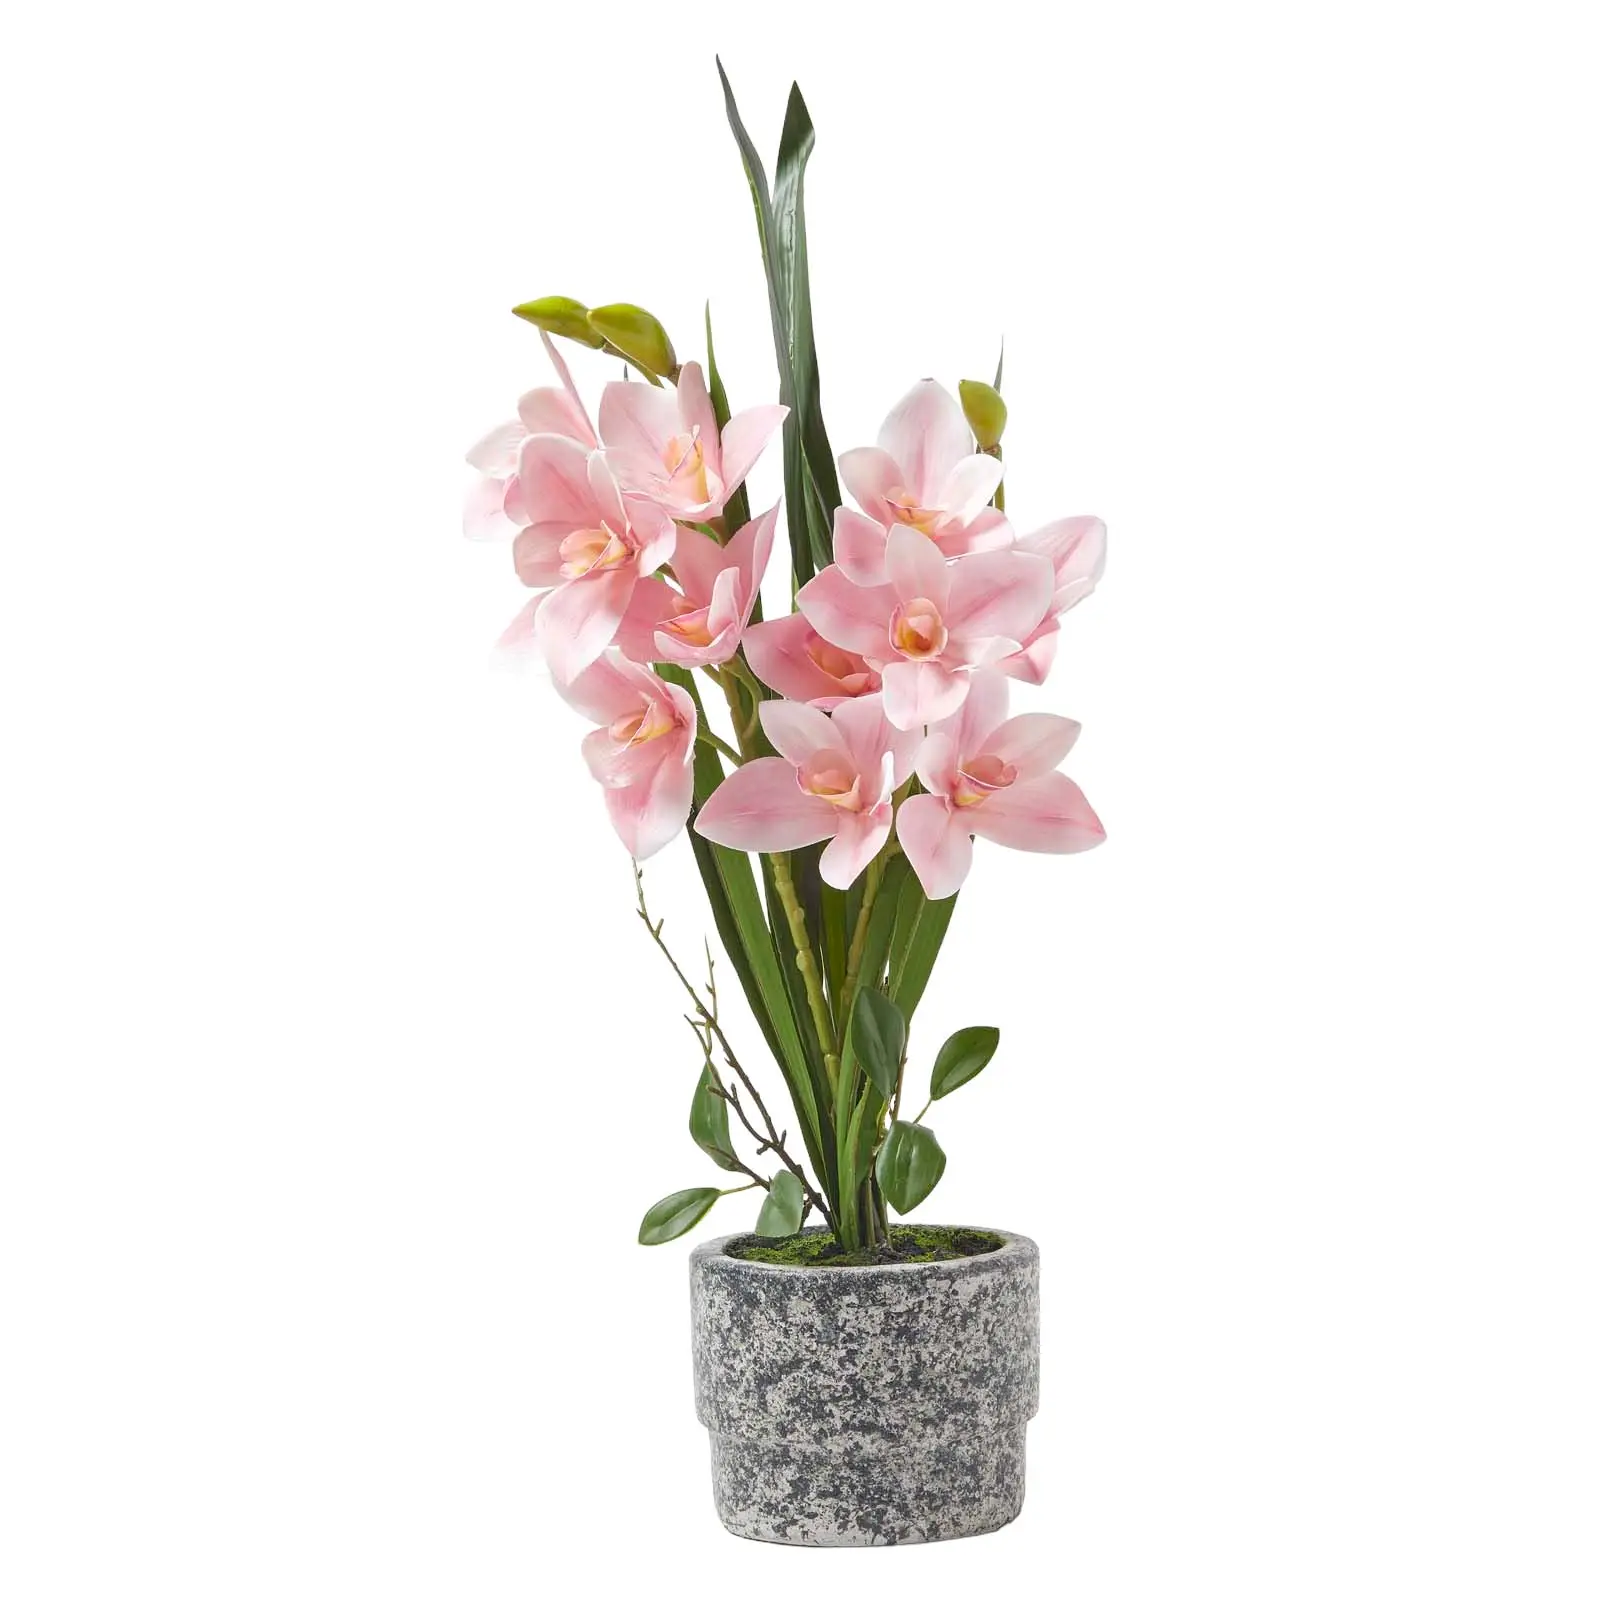 K眉nstliche Orchidee im 58 cm Zement-Topf